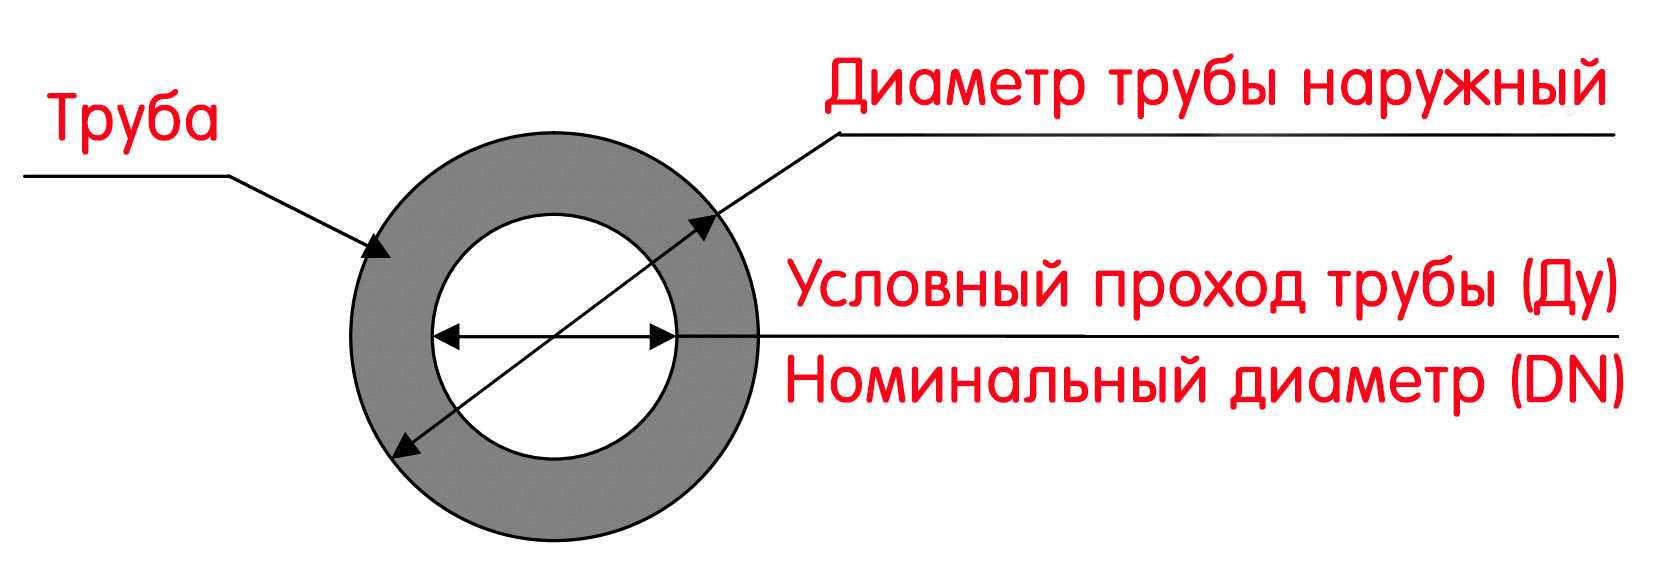 Внешний и внутренний диаметр труб и трубопроводной арматуры